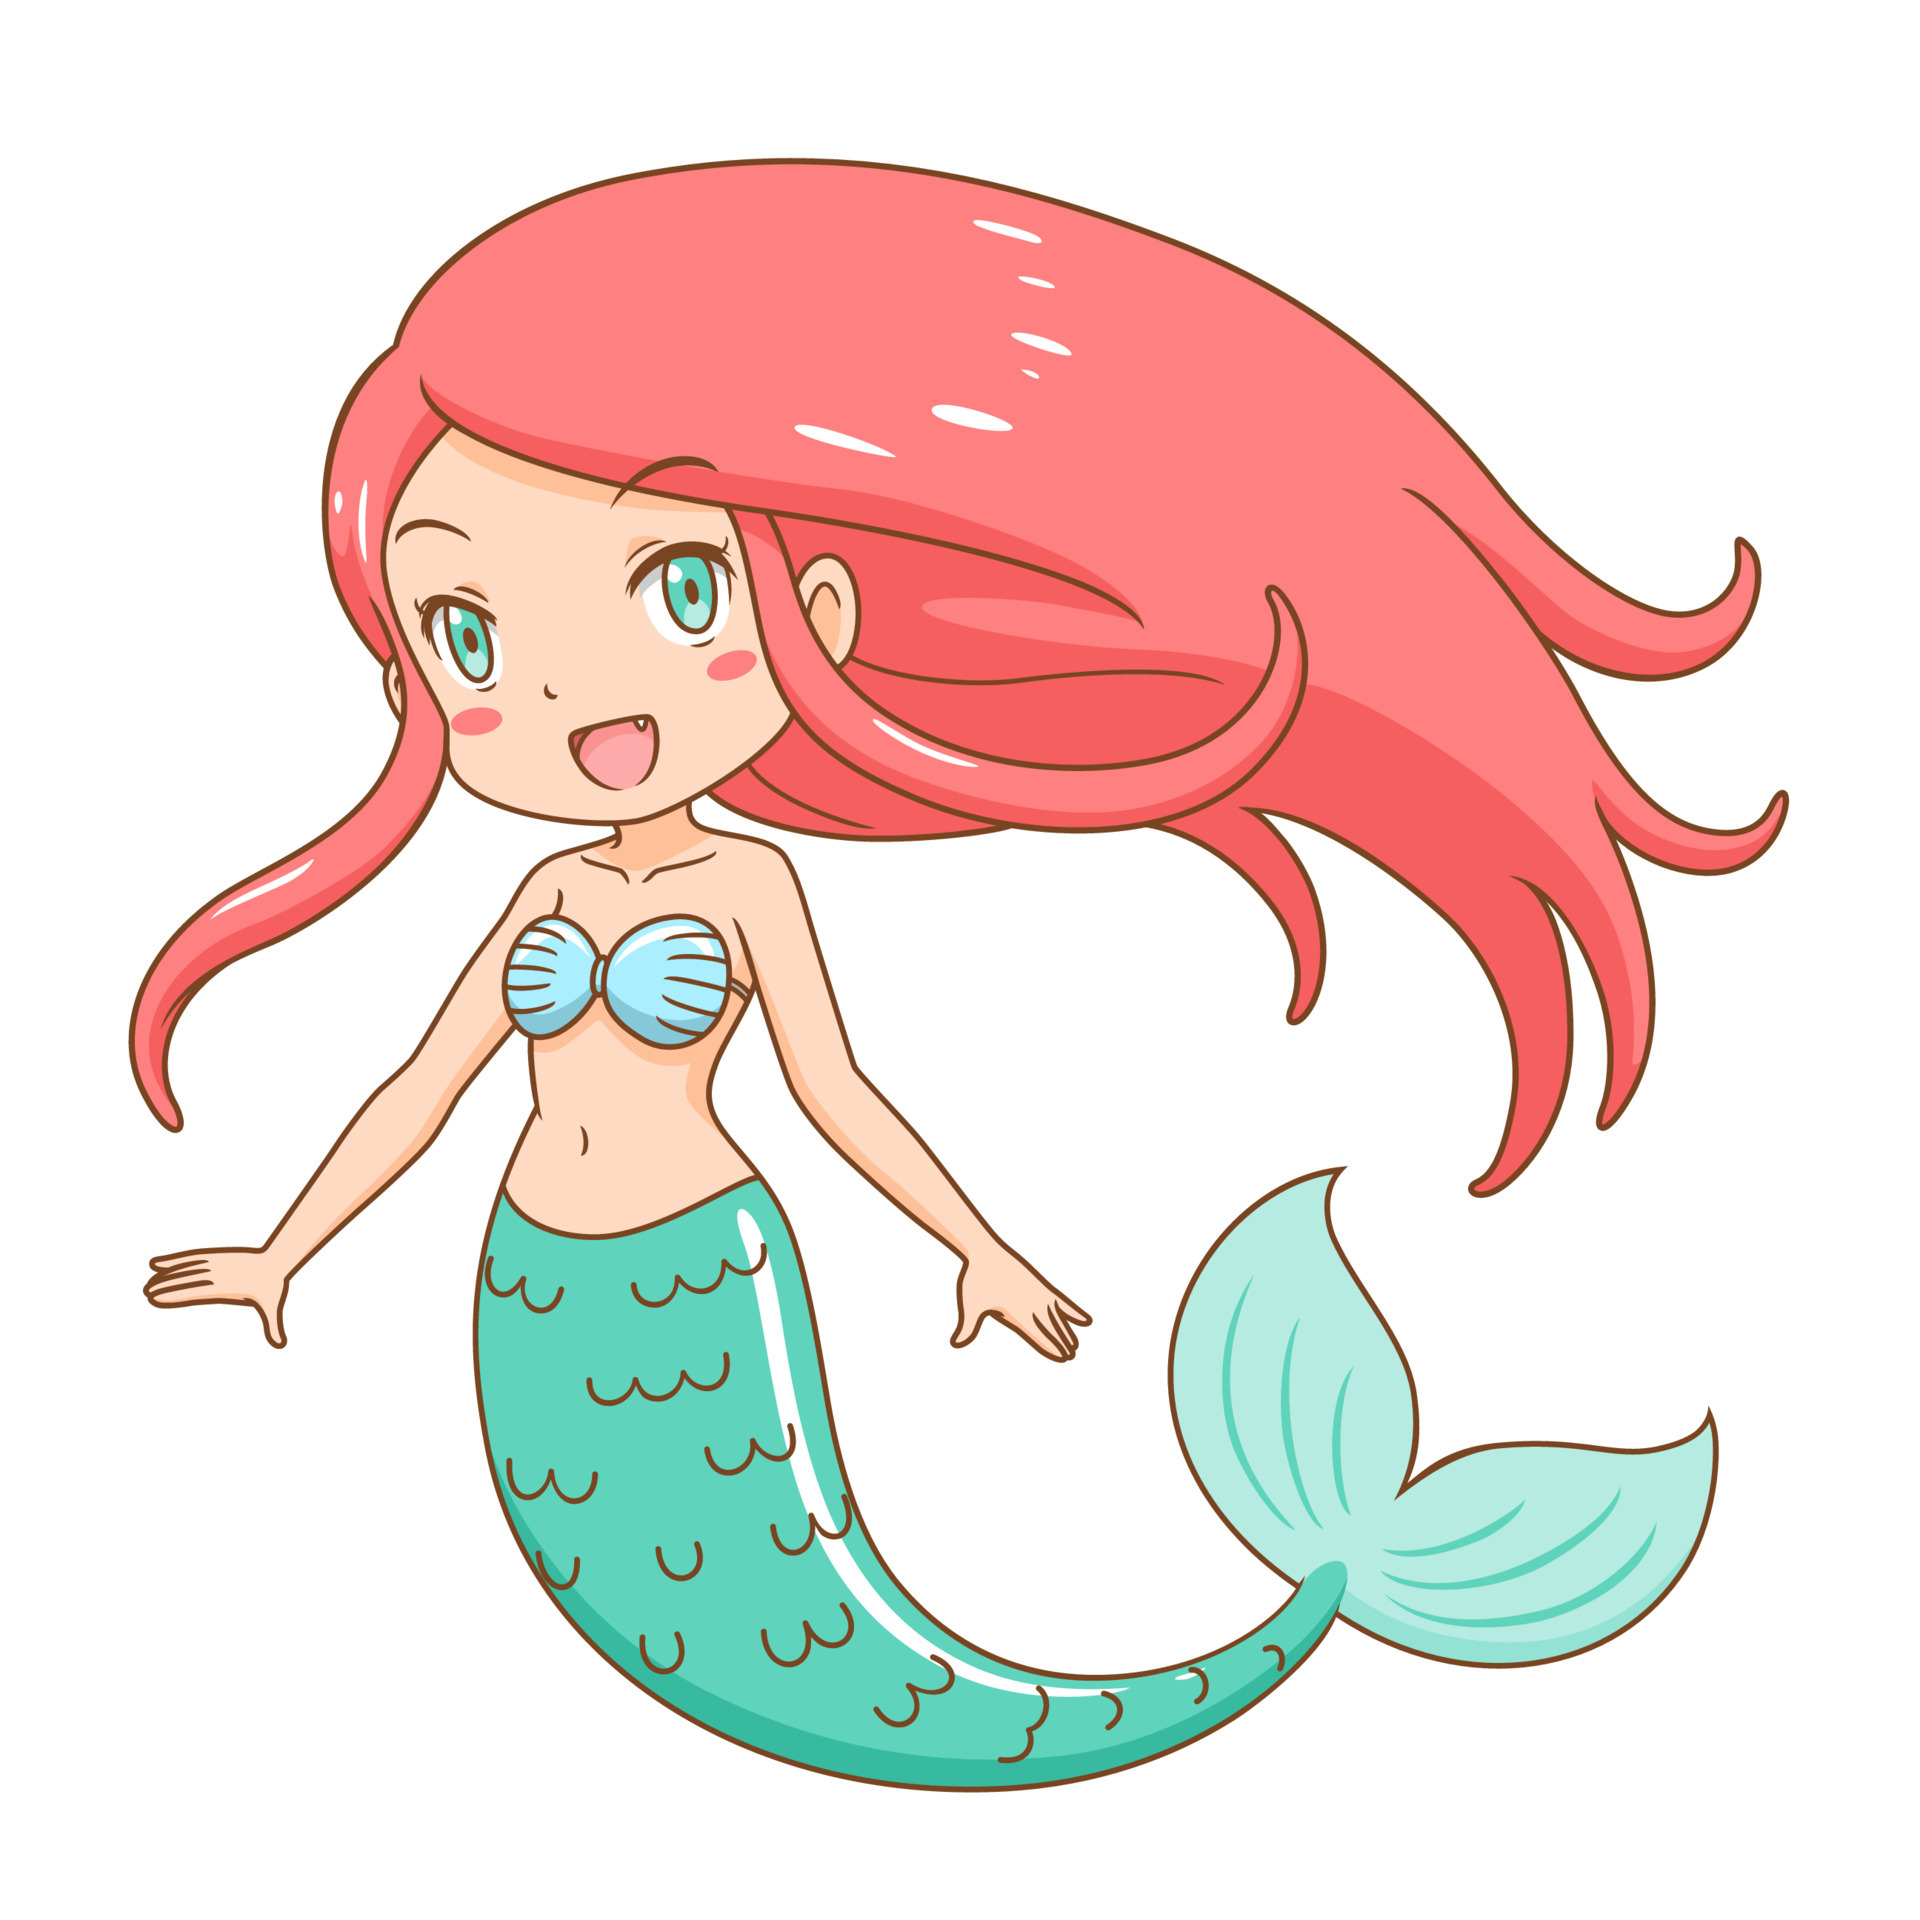 Cartoon character of cute mermaid girl. 4903212 Vector Art at Vecteezy